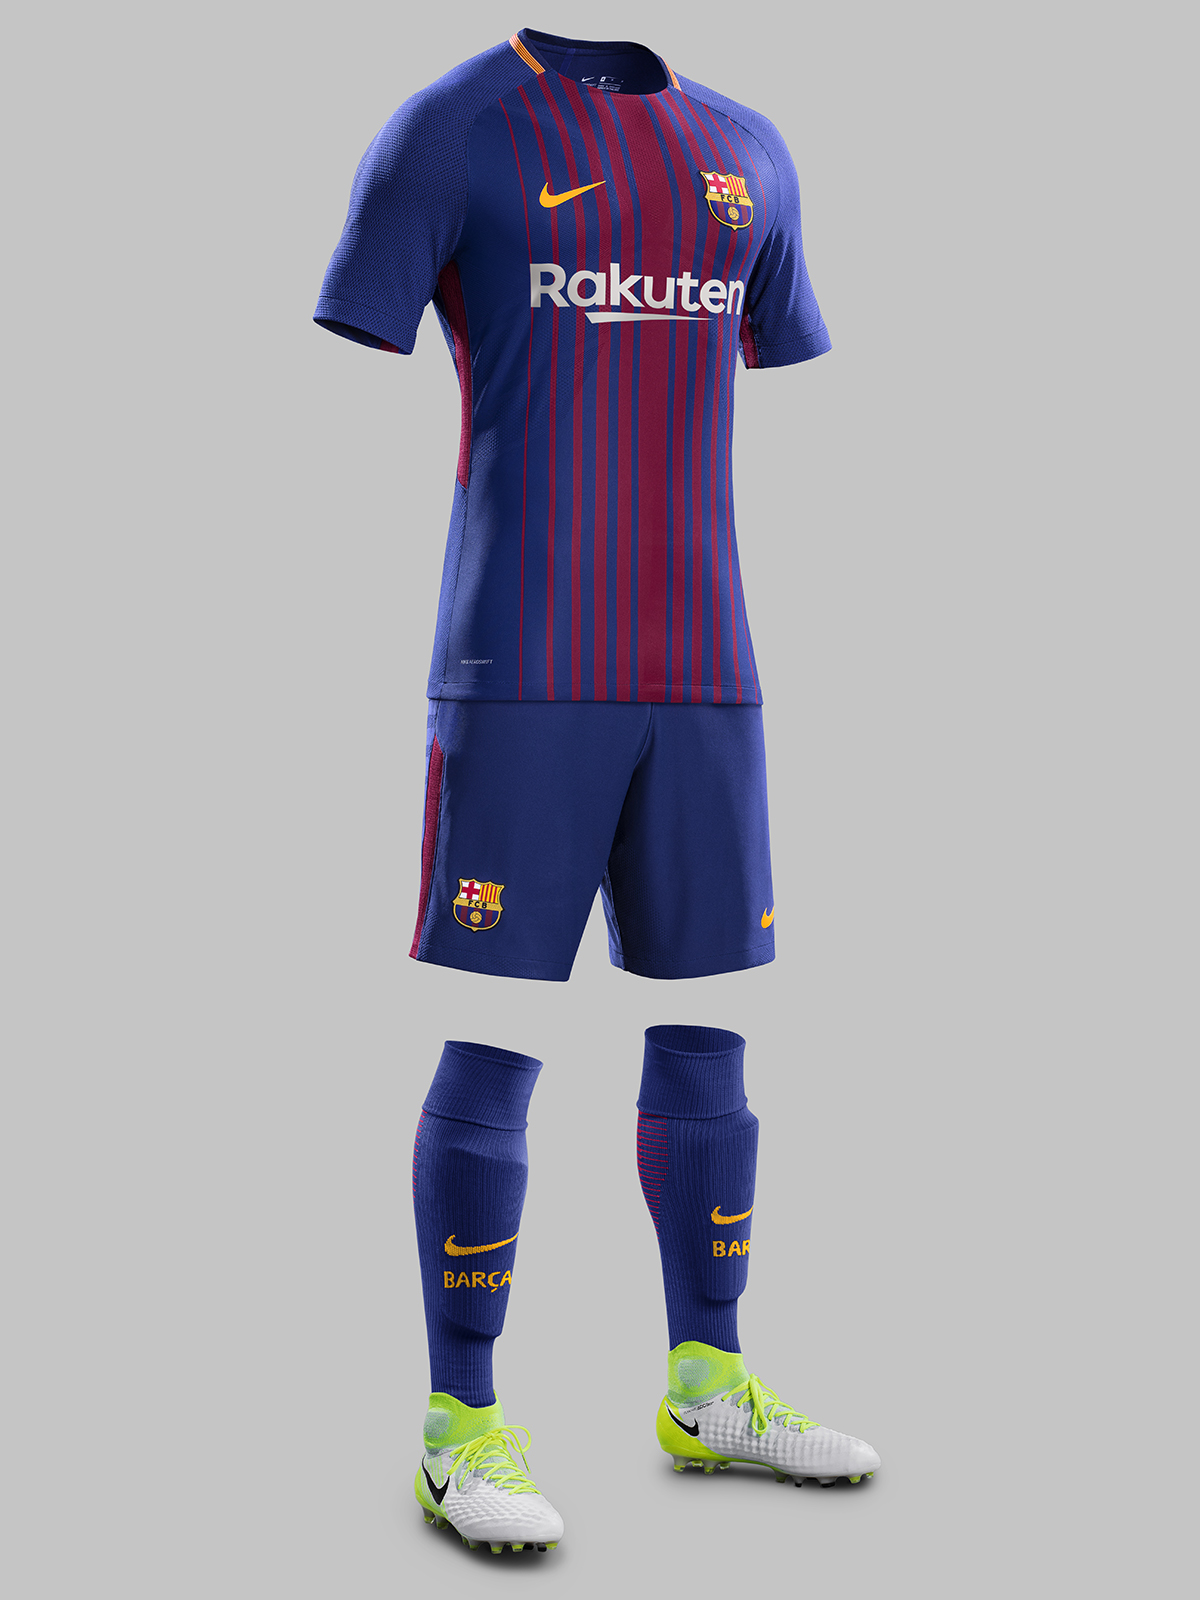 reserva con las manos en la masa Consecutivo Camiseta Nike del FC Barcelona 2017/18 - Marca de Gol